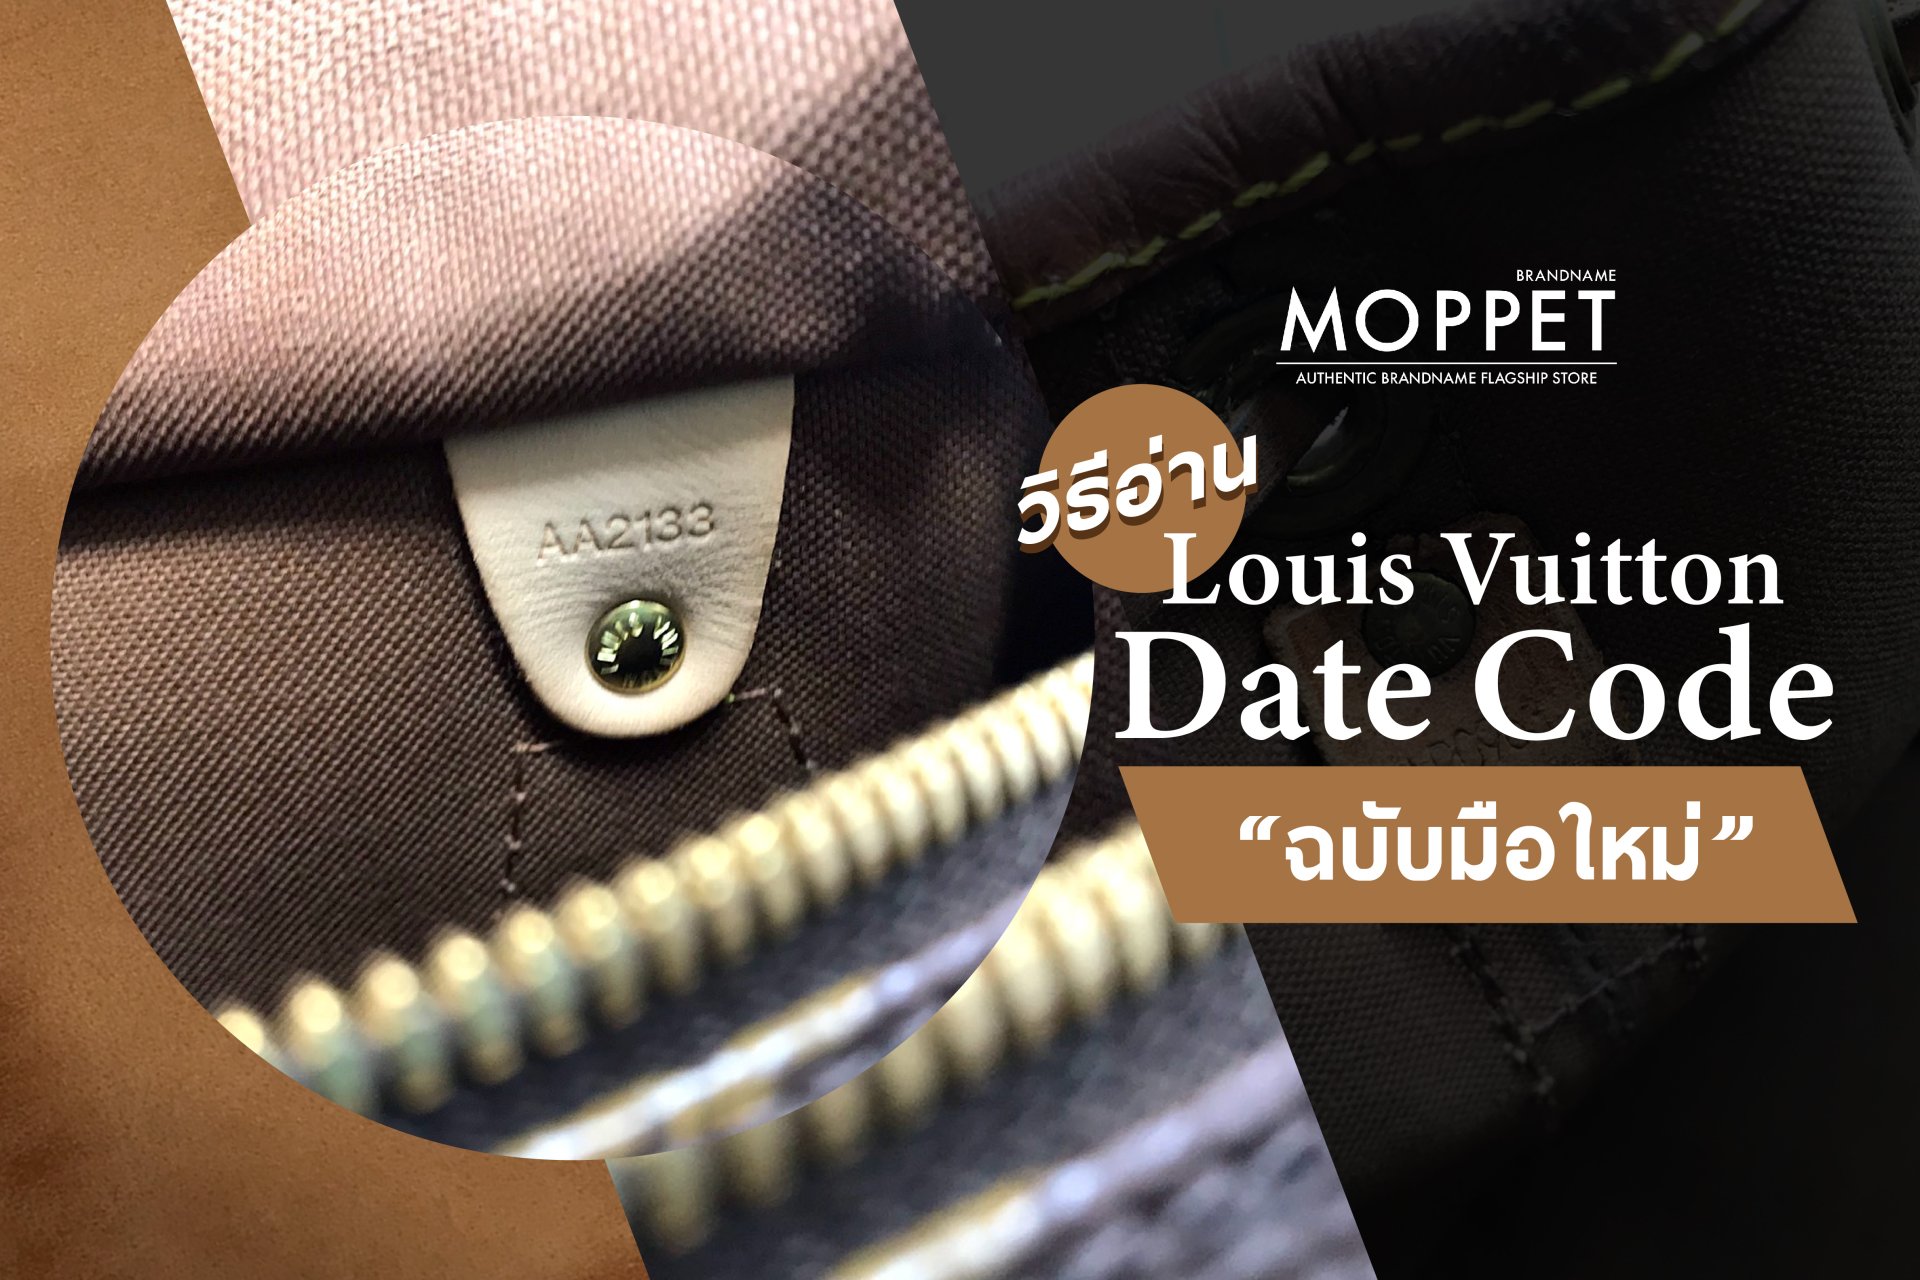 วิธีอ่าน Date Code LV “ฉบับมือใหม่” - moppetbrandname